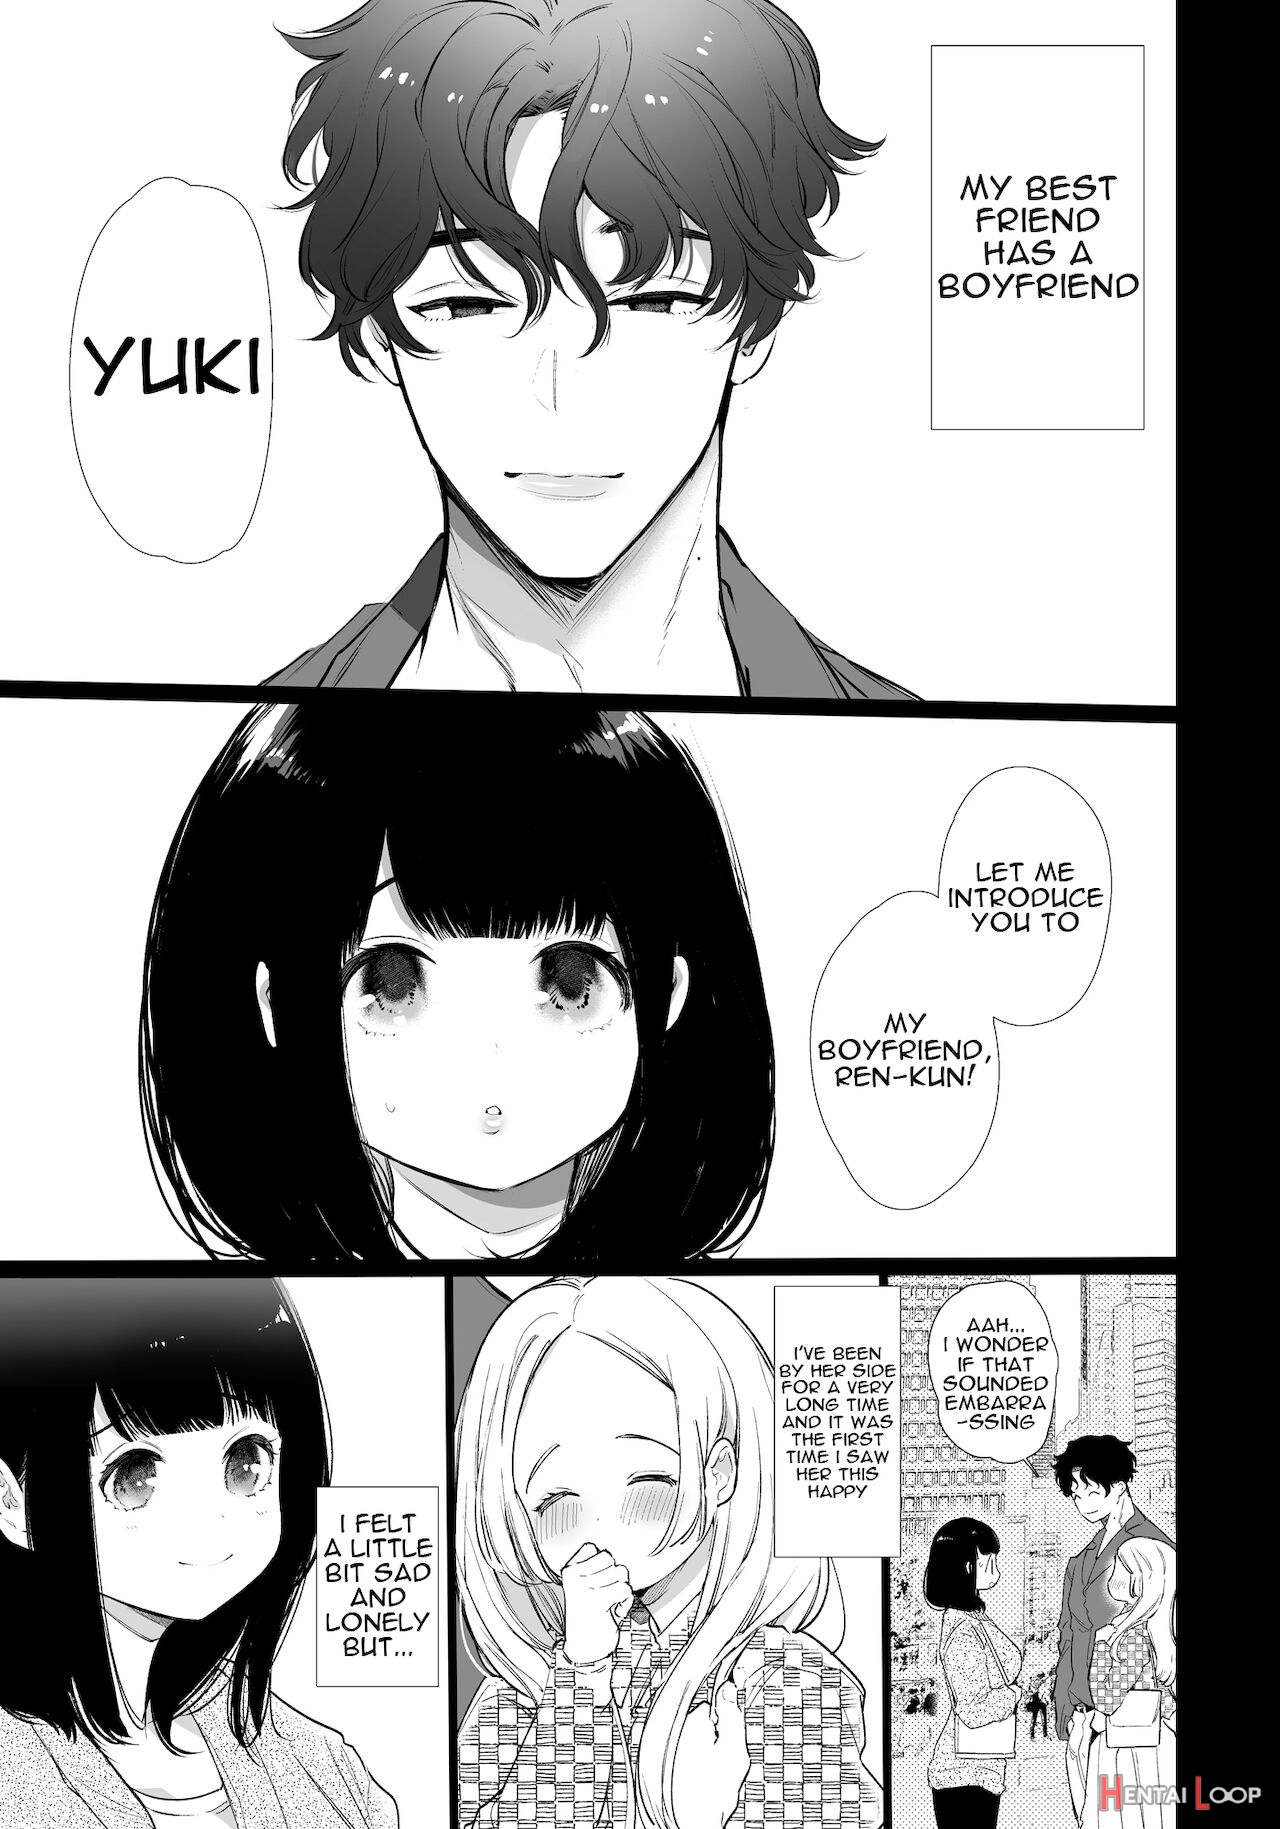 Yuki-chan Ntr page 2